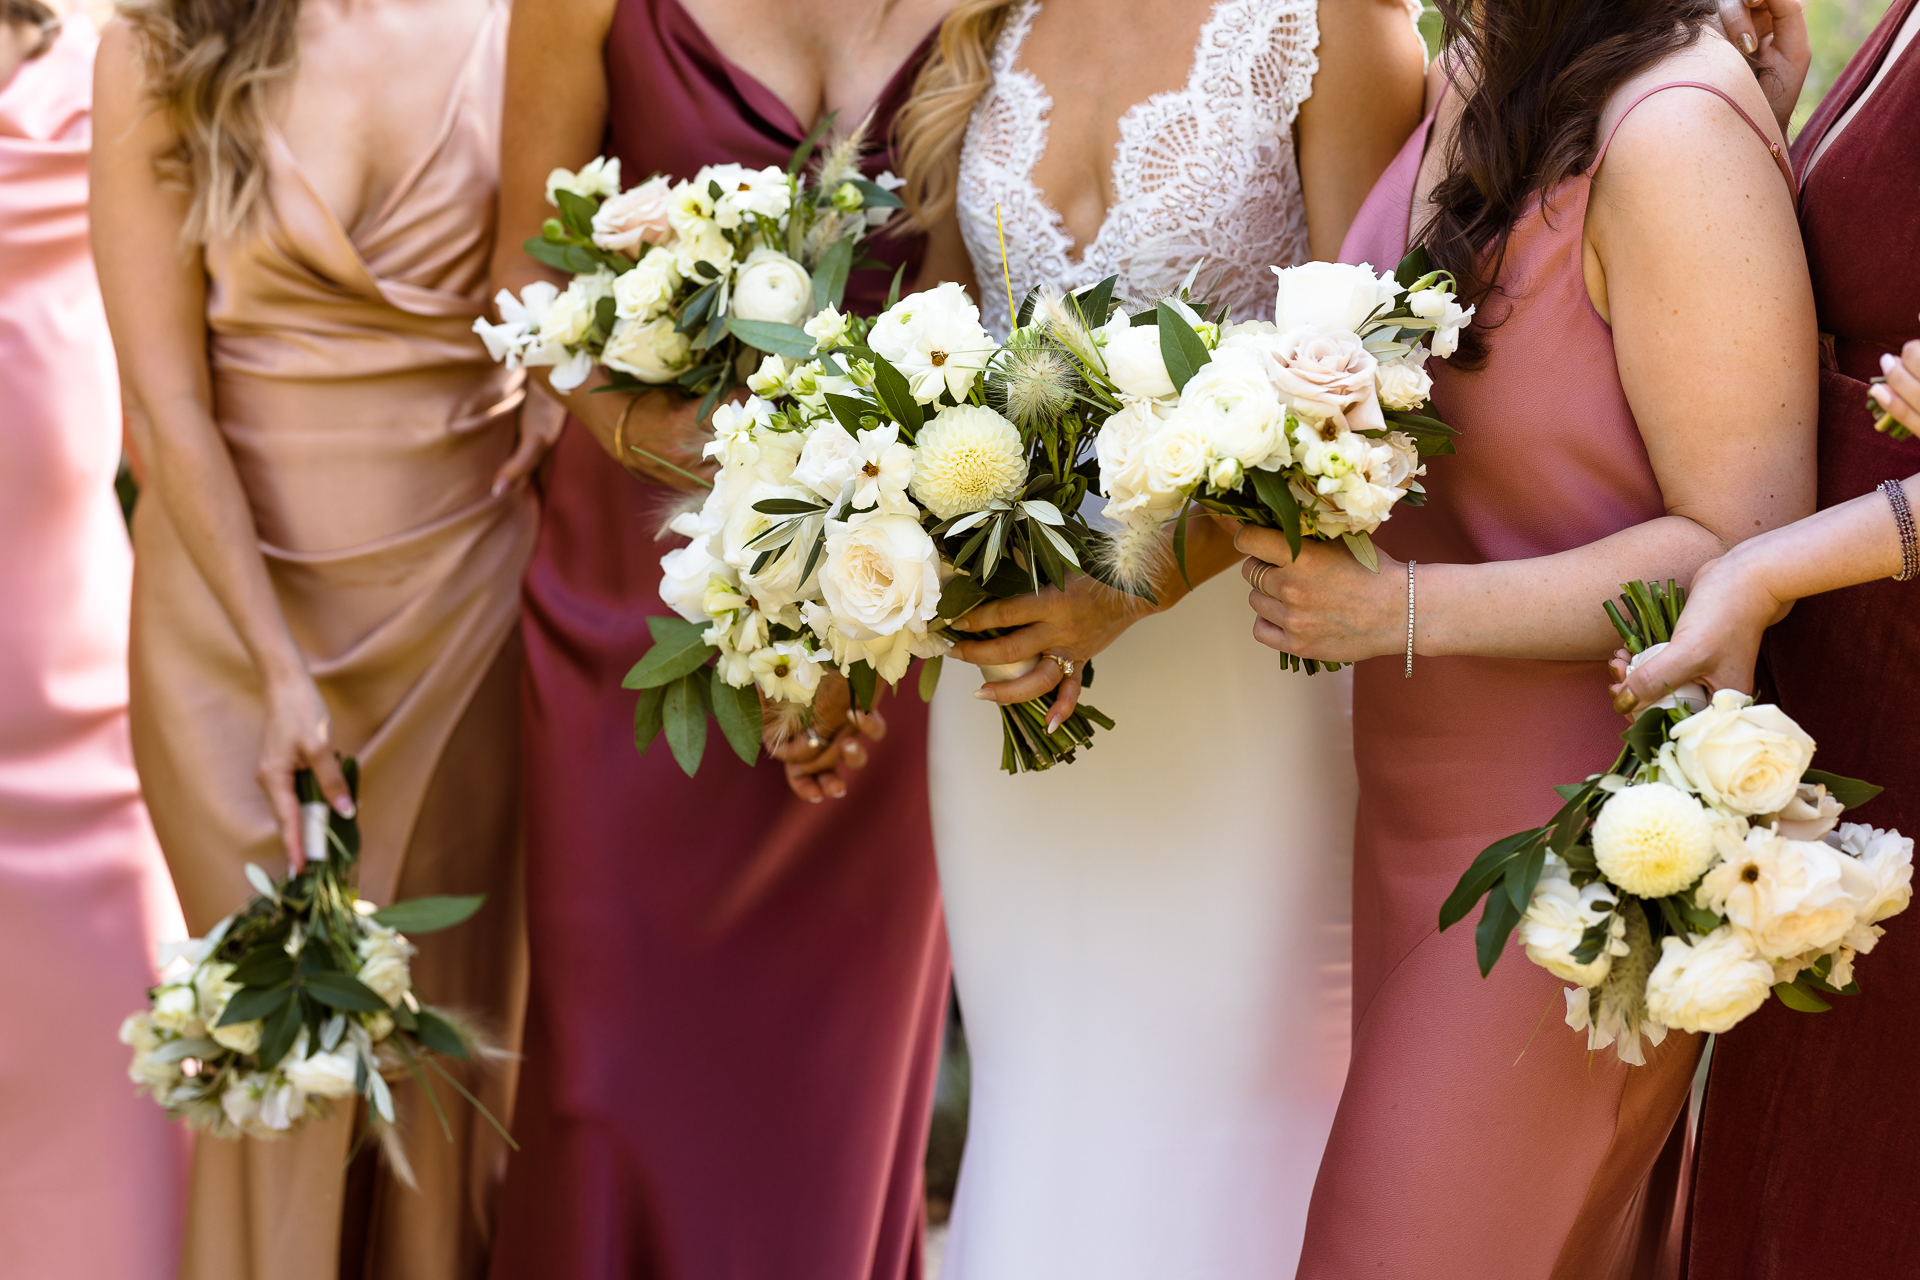 ojai valley inn wedding photos - bridesmaids bouquets